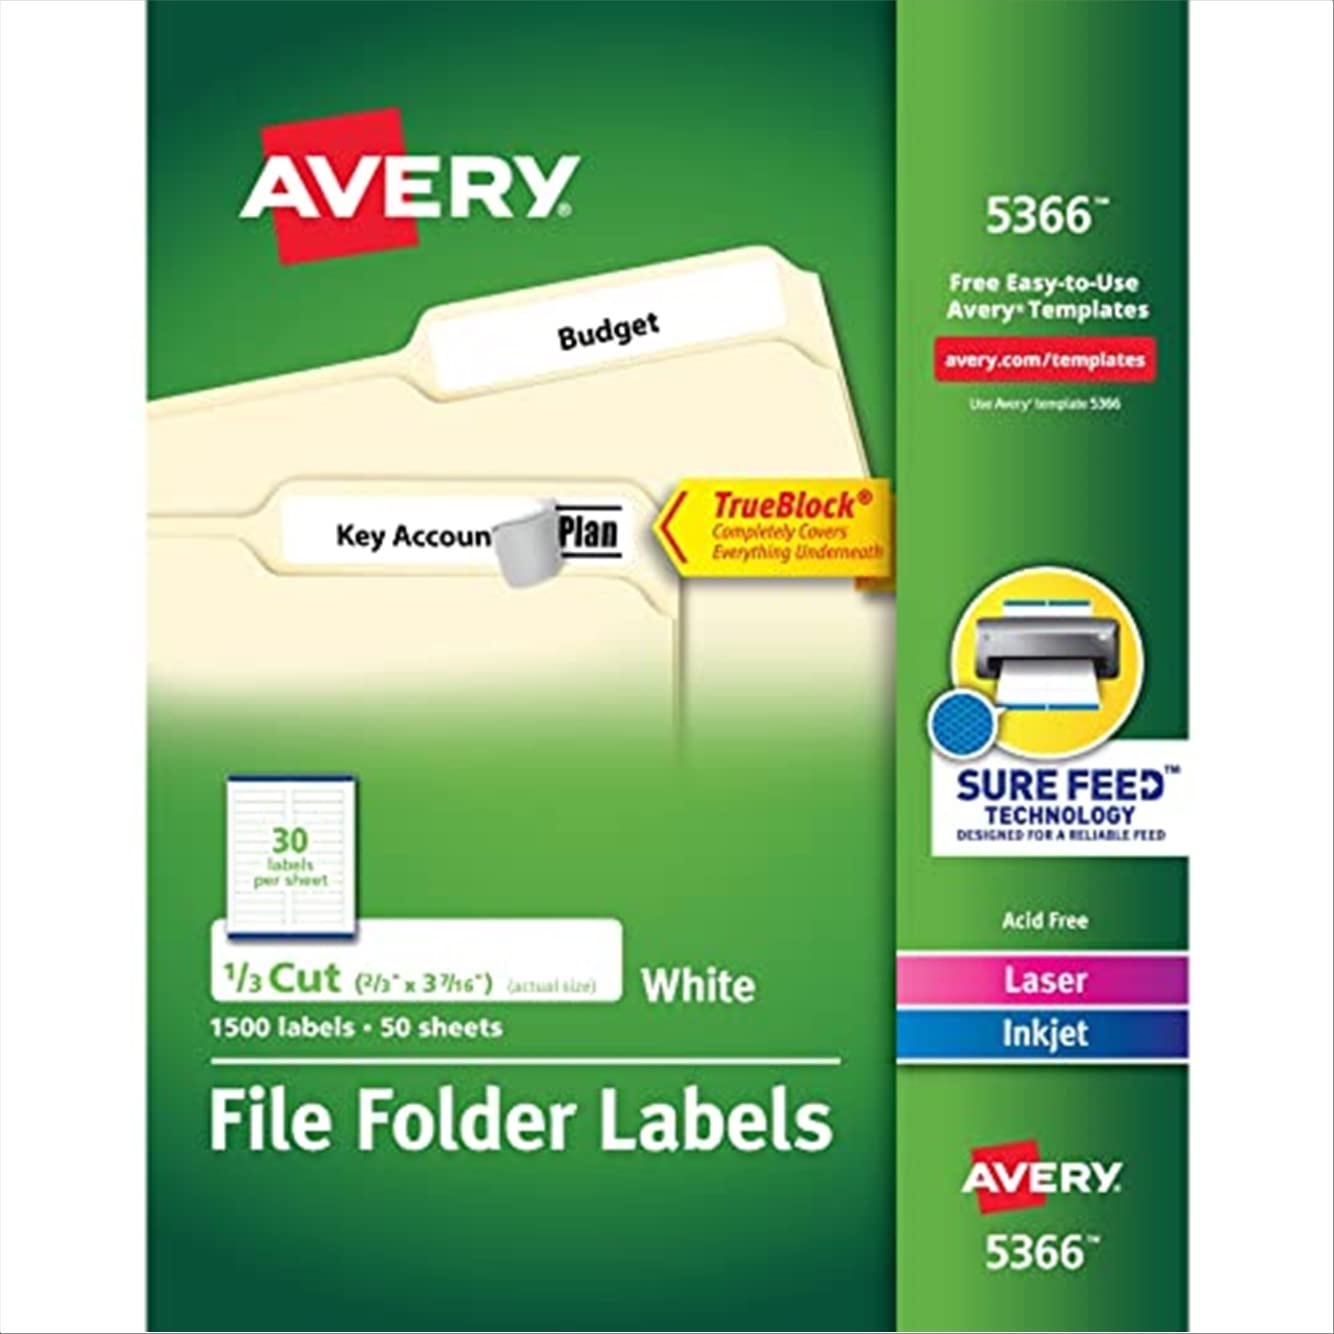 Avery TrueBlock 기술이 적용된 레이저 및 잉크젯 프린터용 파일 폴더 레이블...